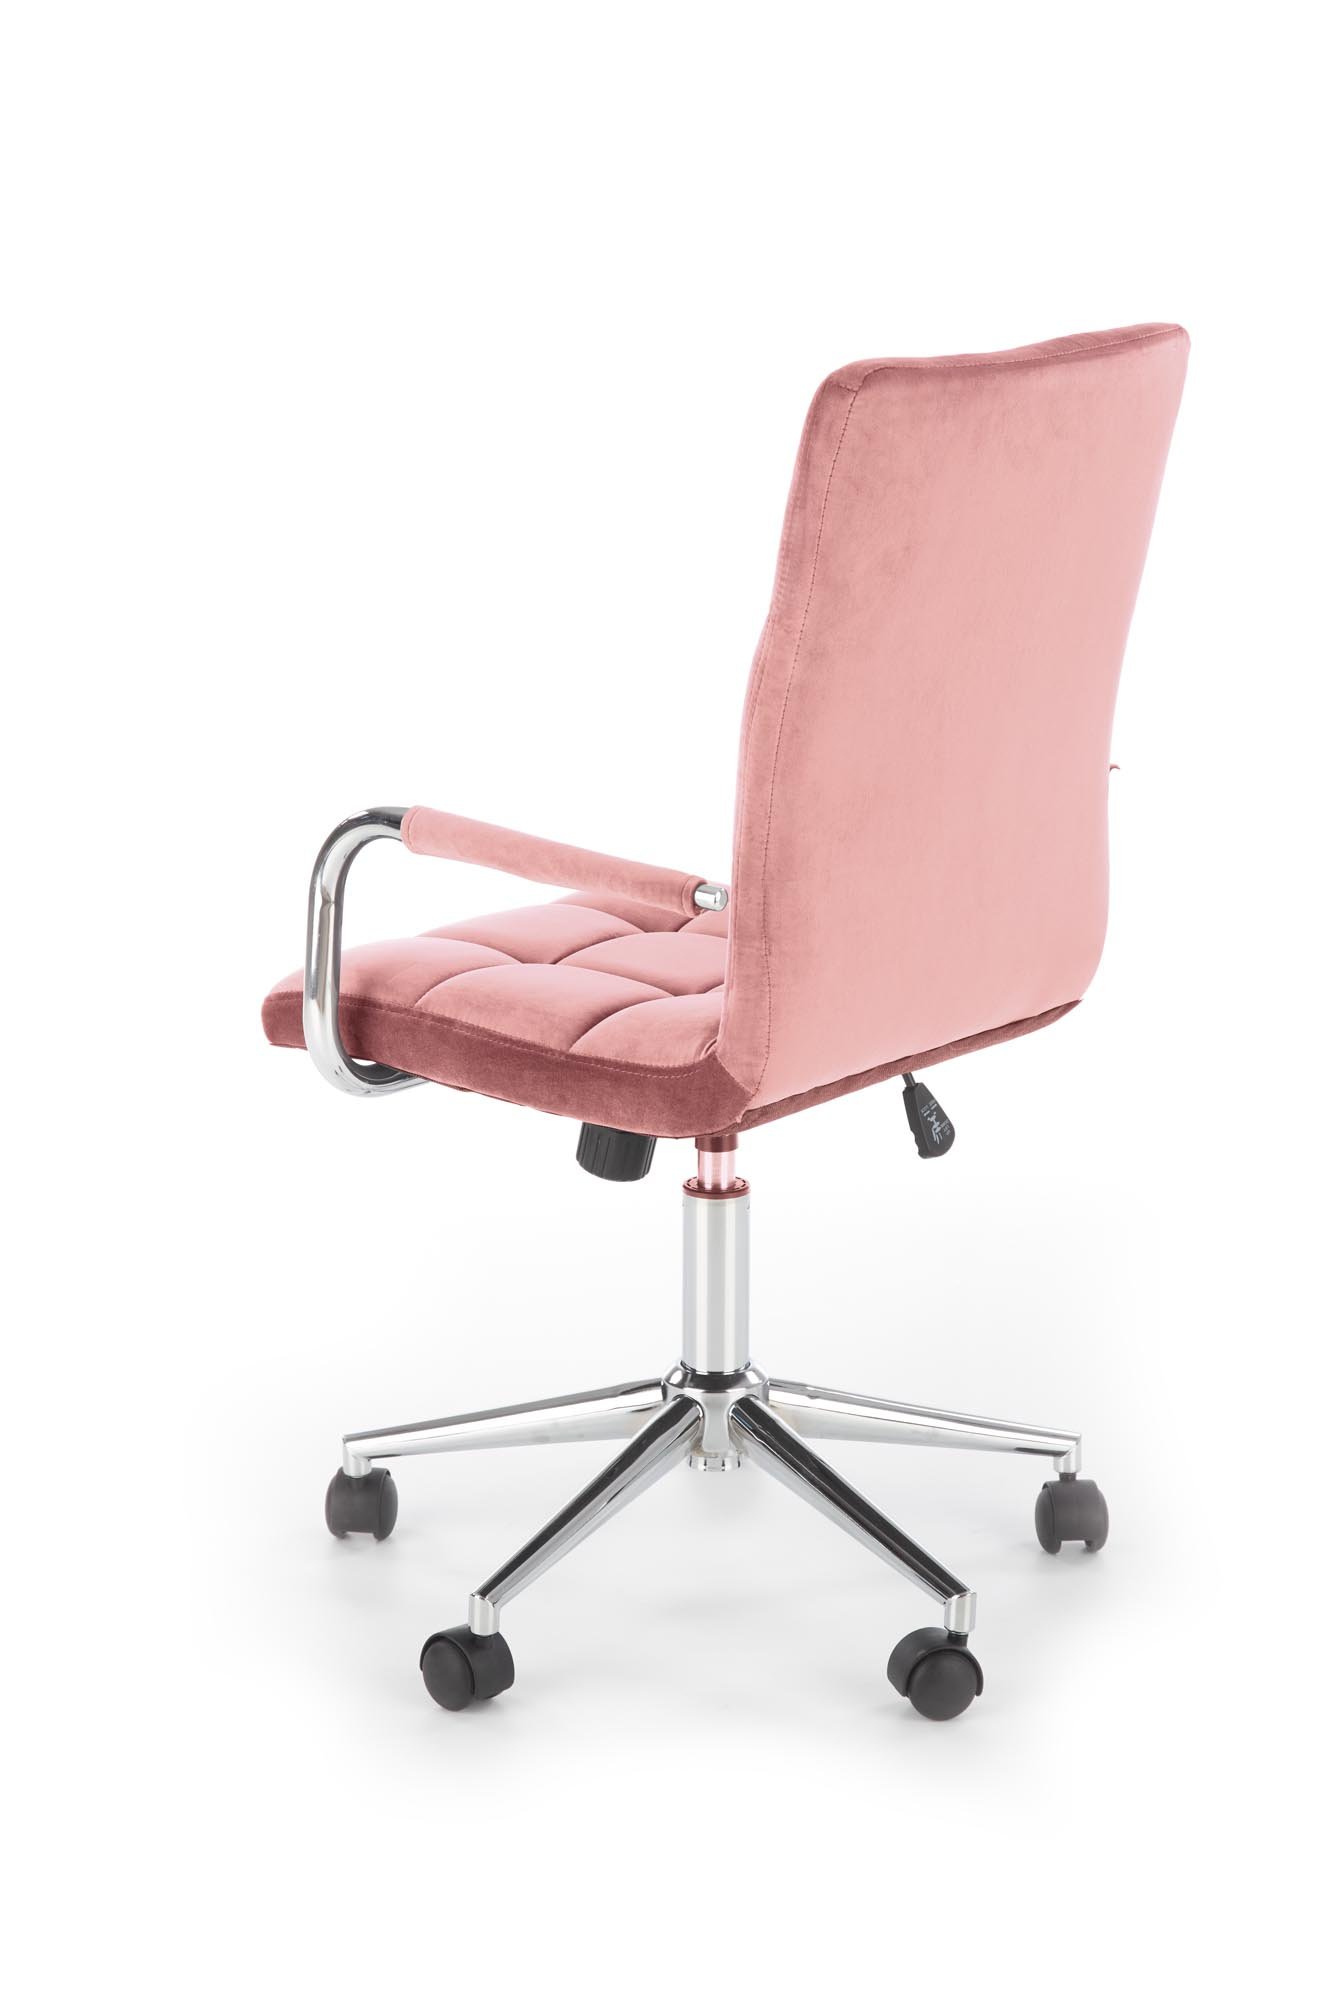 Vaikiška kėdė GONZO 4, rožinė - 2